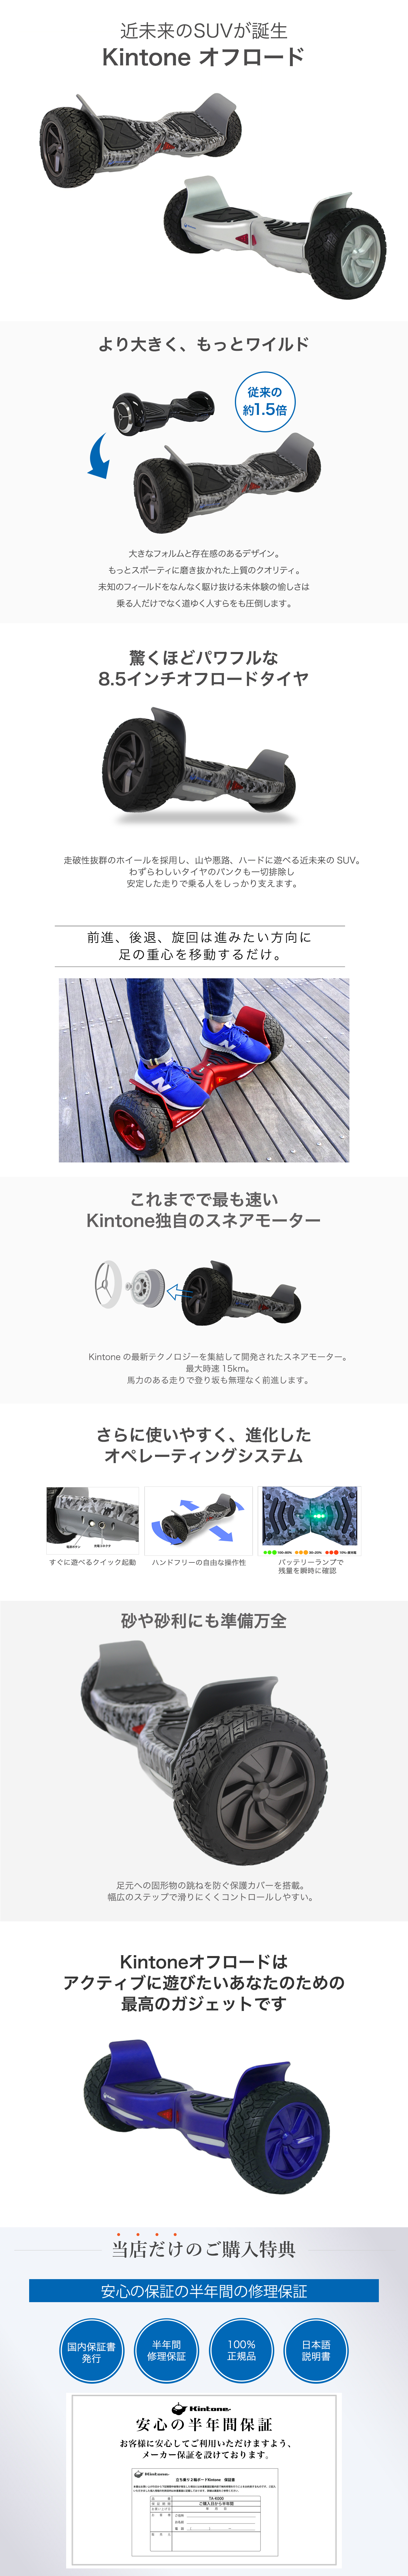 27740円 日本未入荷 Kintone バランススクーター ミニセグウェイ オフロード 安心の6ヶ月保証 キントーン 誕生日 プレゼント ギフト 子ども 大人